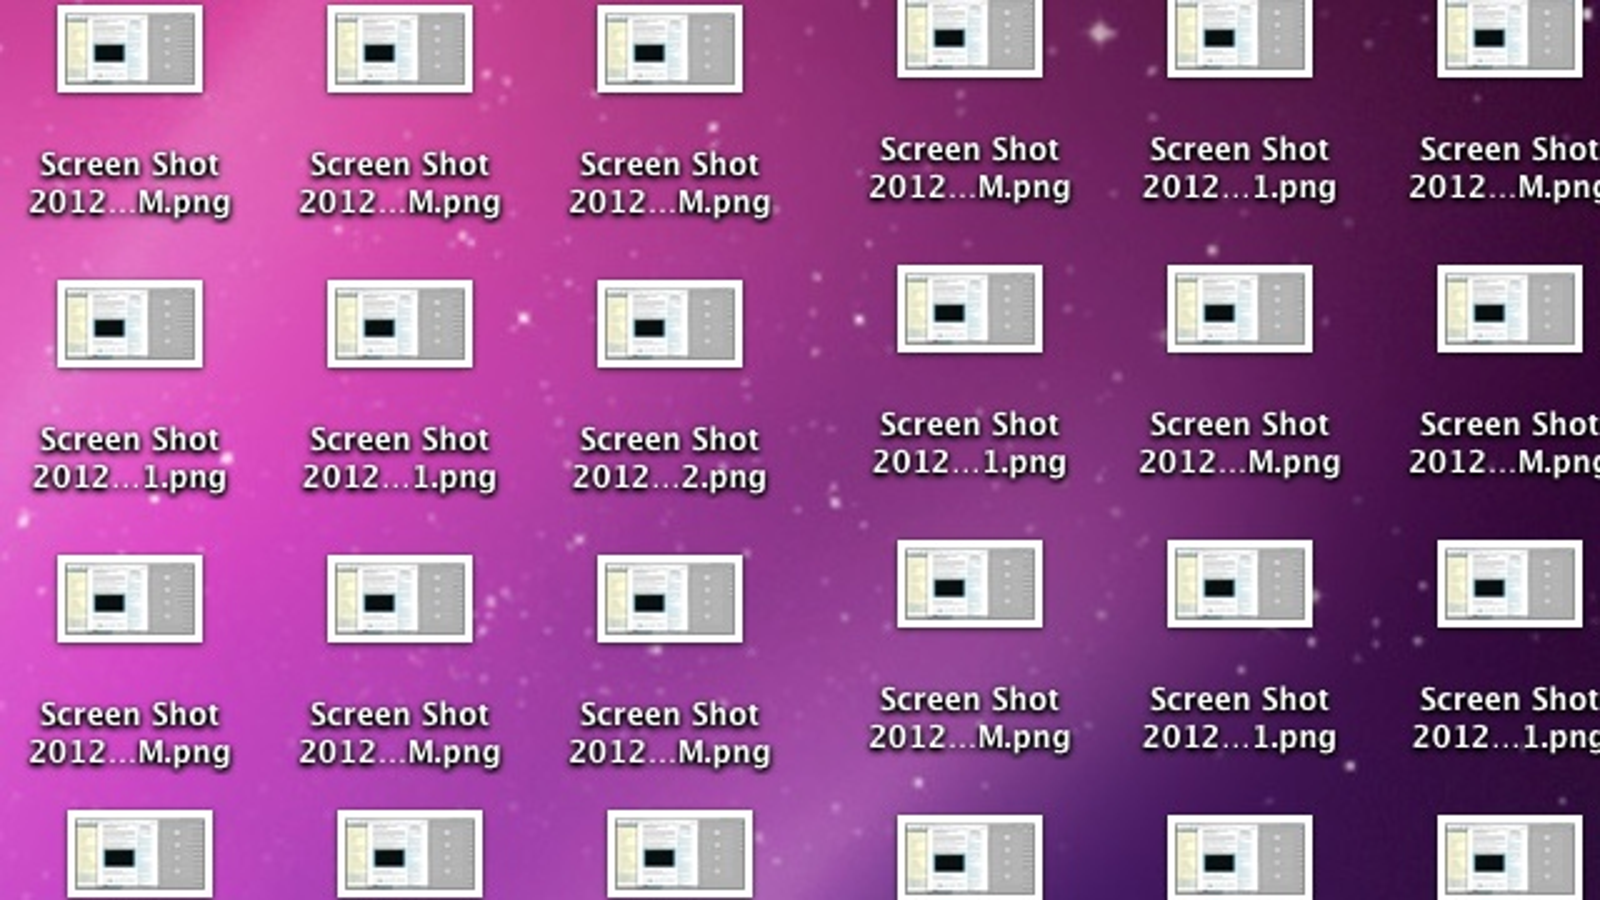 where do screenshots save on mac